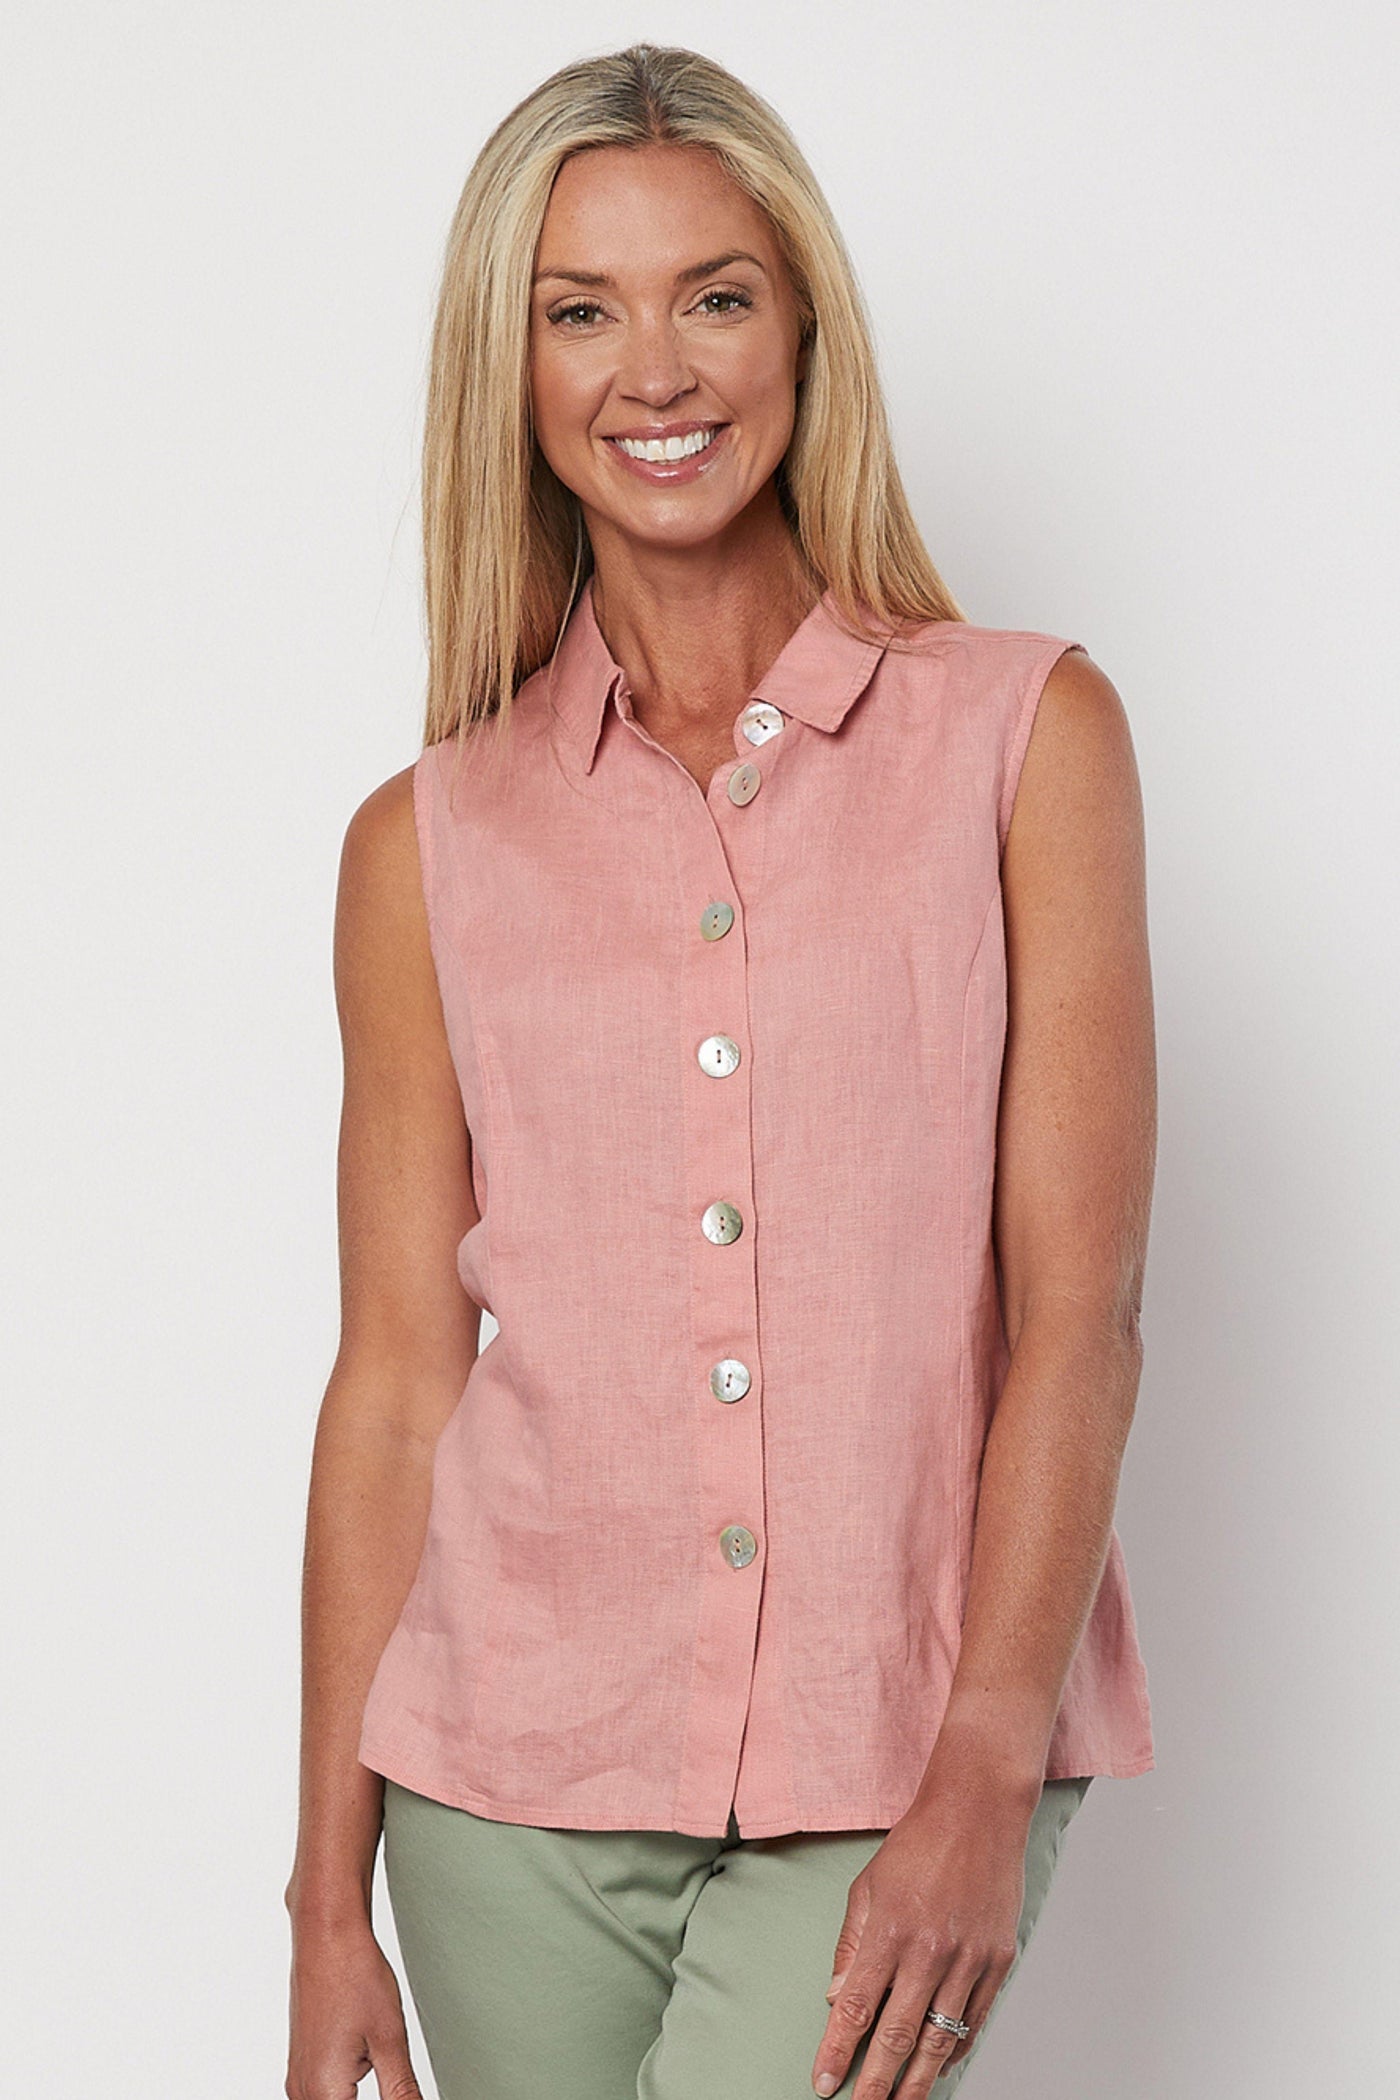 Sleeveless Button Shirt - Rose (Size XL.16)